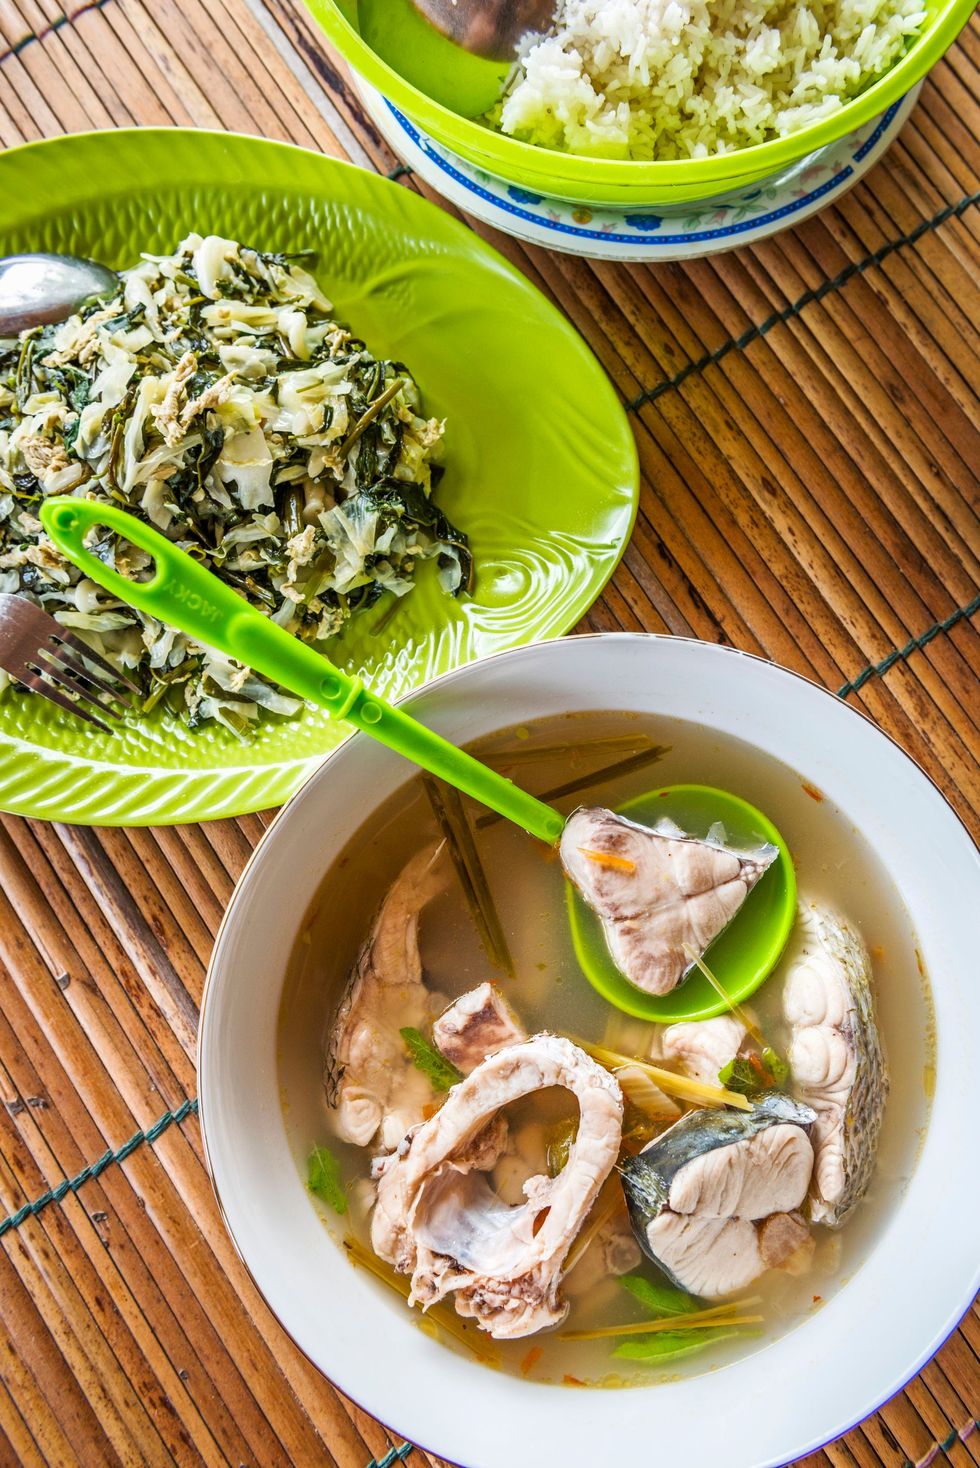 Een oppeppend vissoepje met groenten en rijst in de homestay